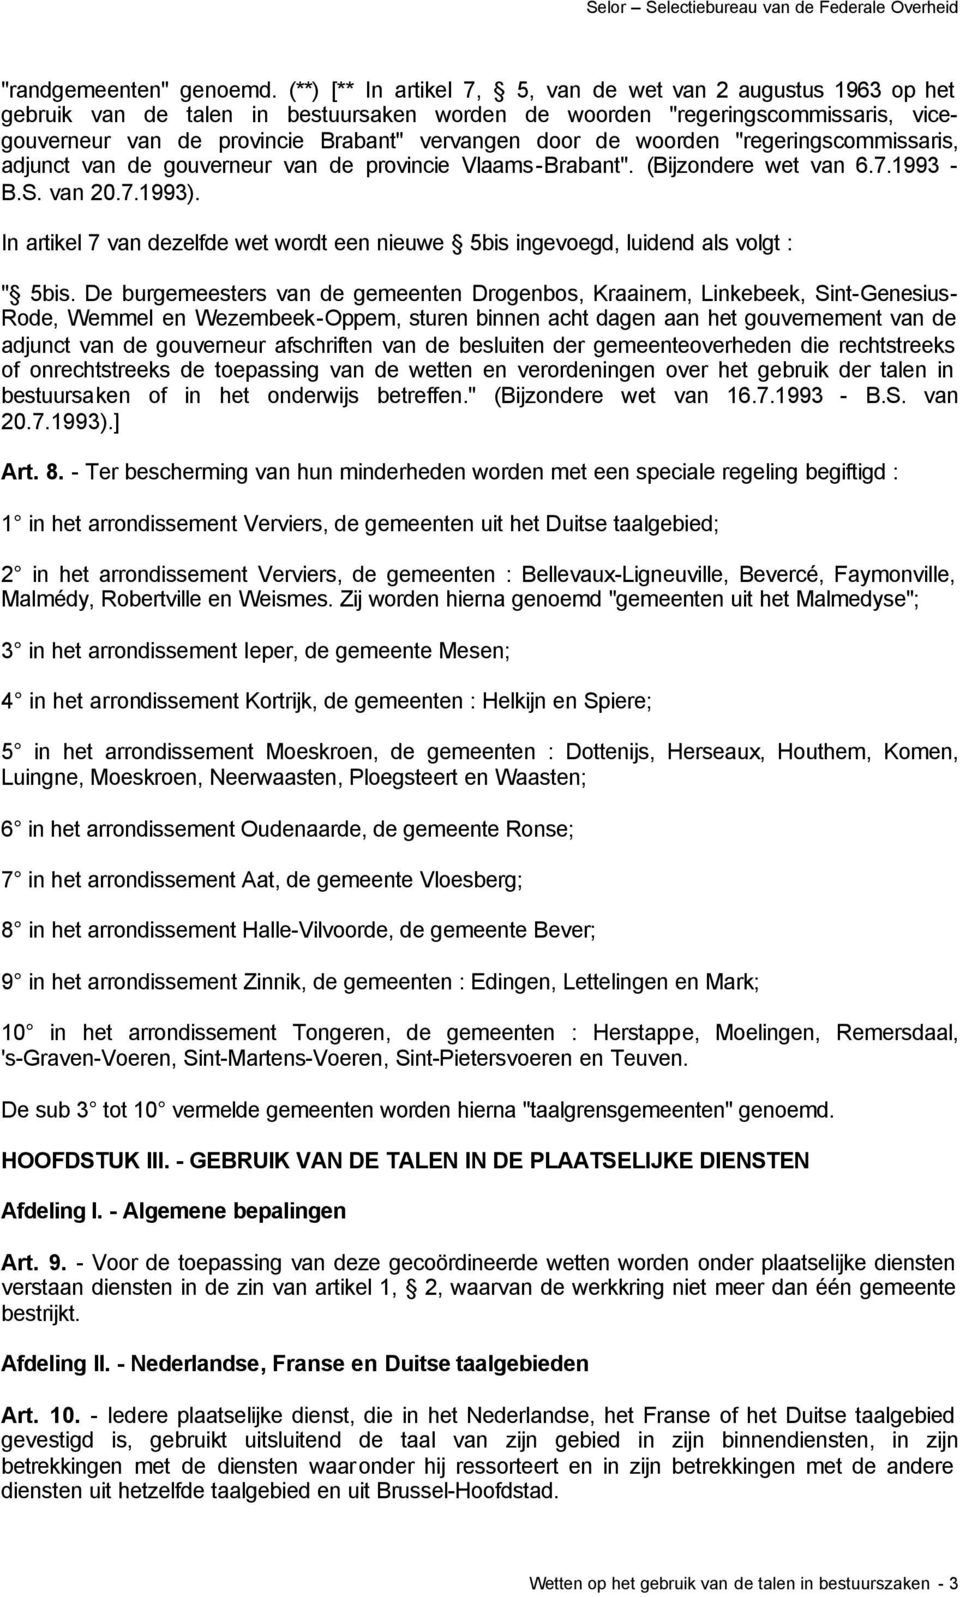 de woorden "regeringscommissaris, adjunct van de gouverneur van de provincie Vlaams-Brabant". (Bijzondere wet van 6.7.1993 - B.S. van 20.7.1993).